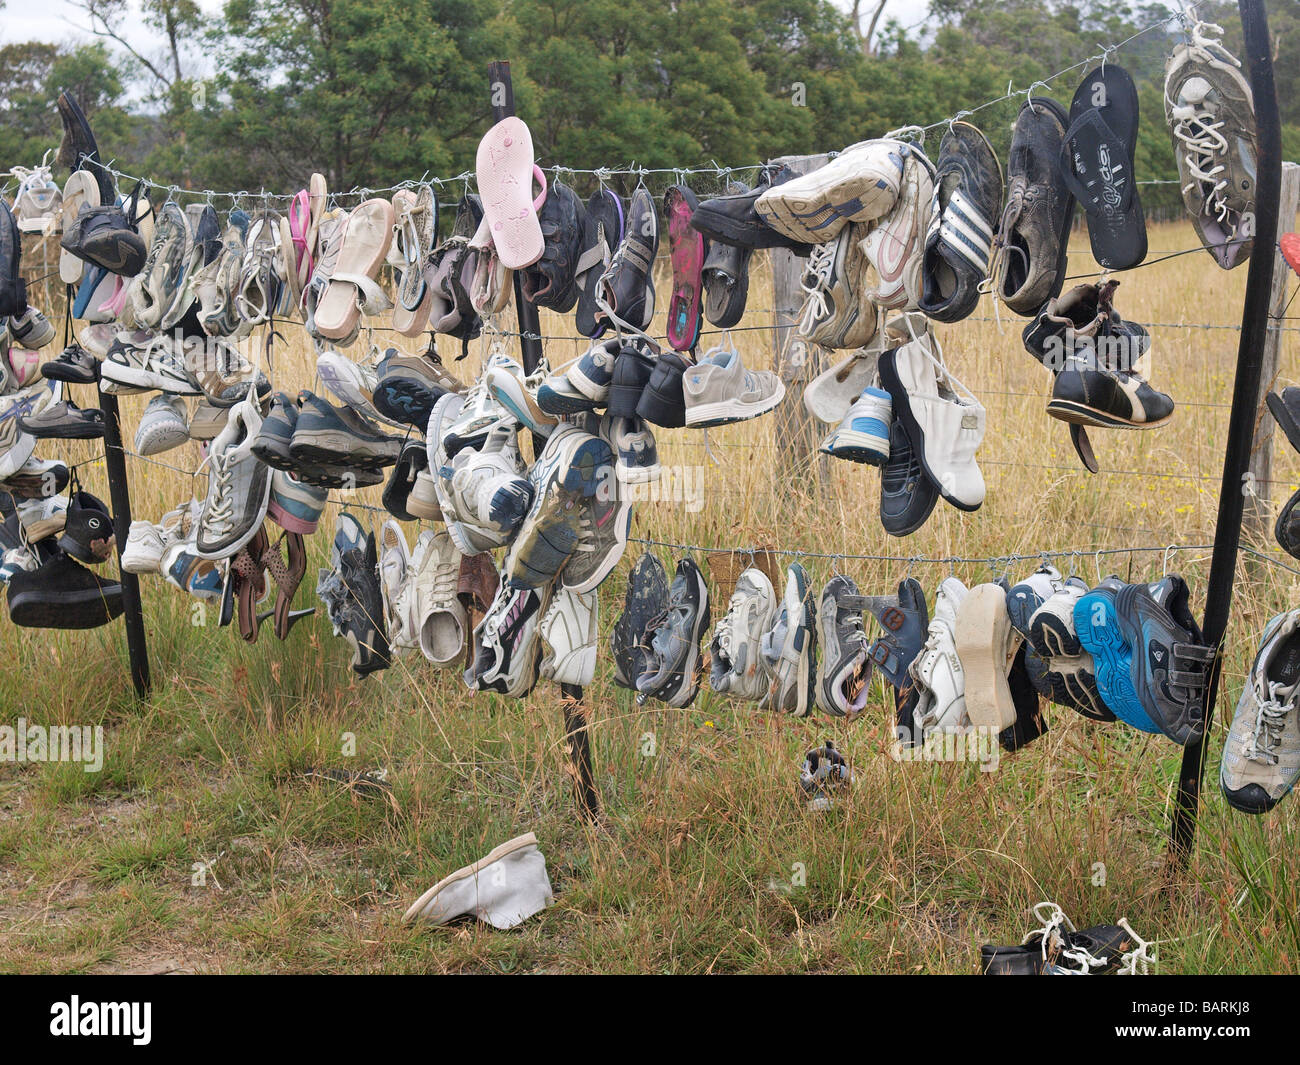 Formateurs perdus et abandonnés, des tongs et des chaussures accrochées sur barbelés Tasmanie Australie Banque D'Images